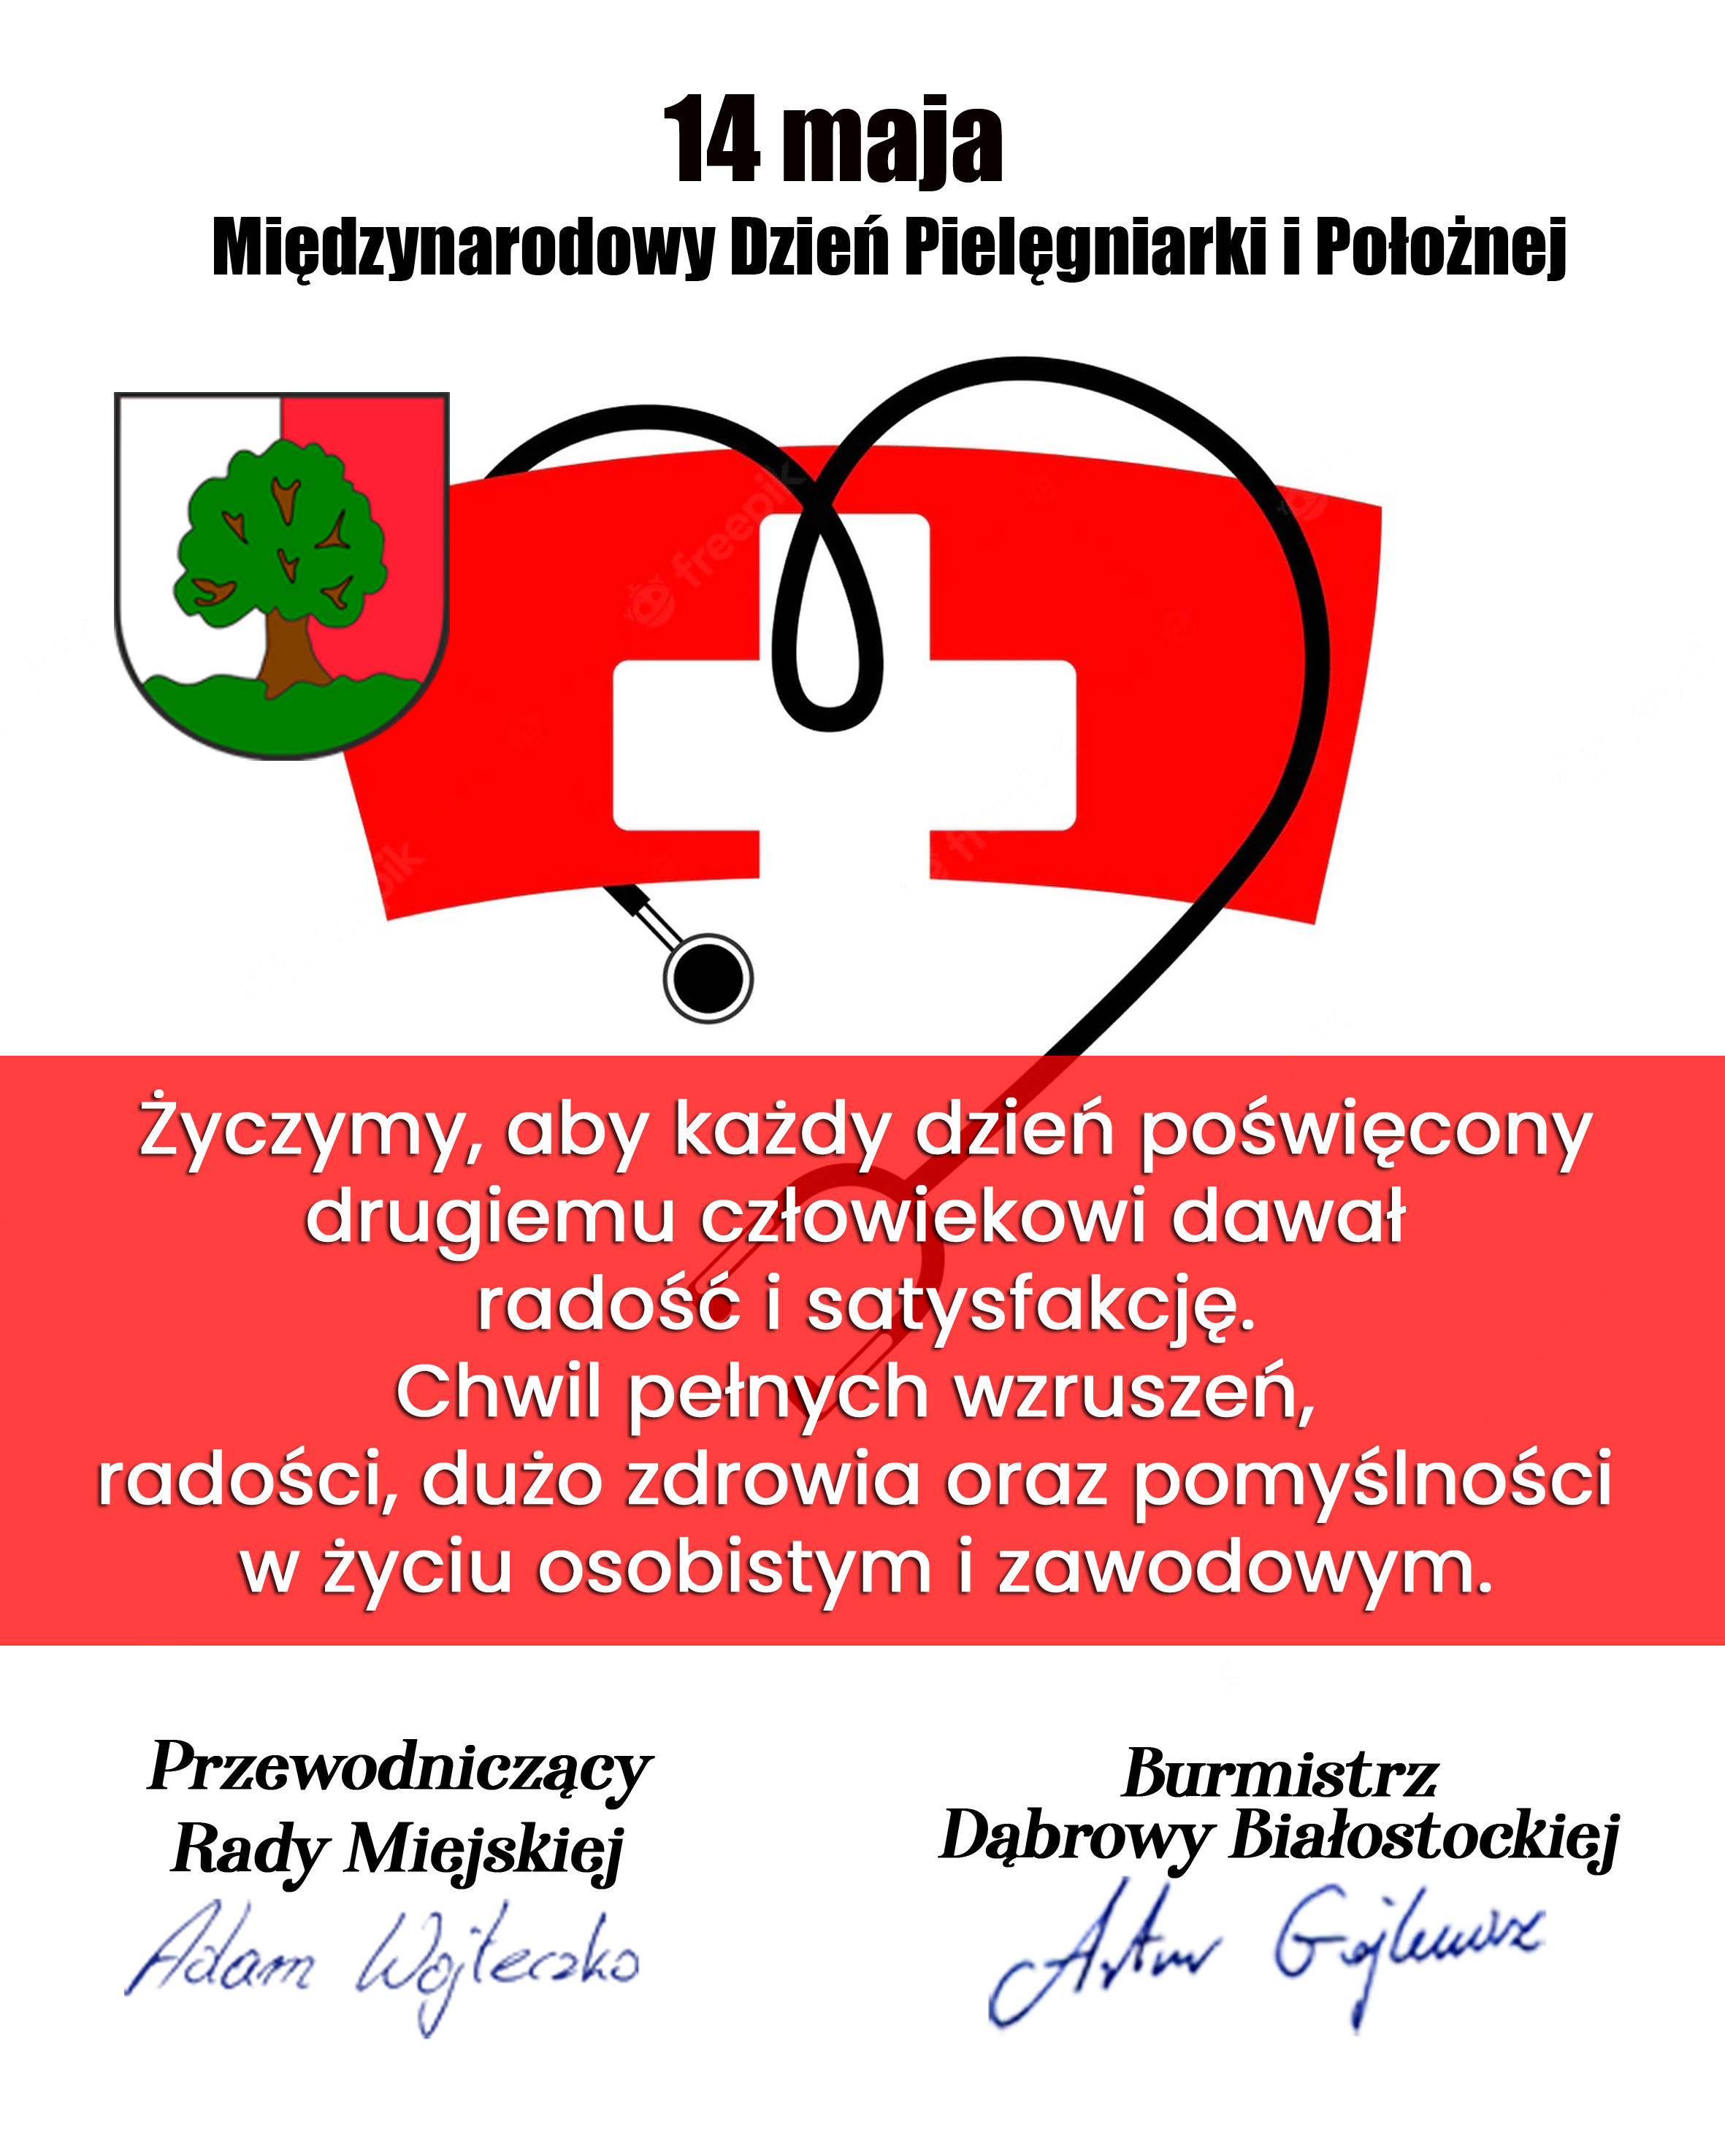 14 maja Międzynarodowy Dzień Pielęgniarek i Położnych, herb dąbrowy białostockiej, serce, steteskop